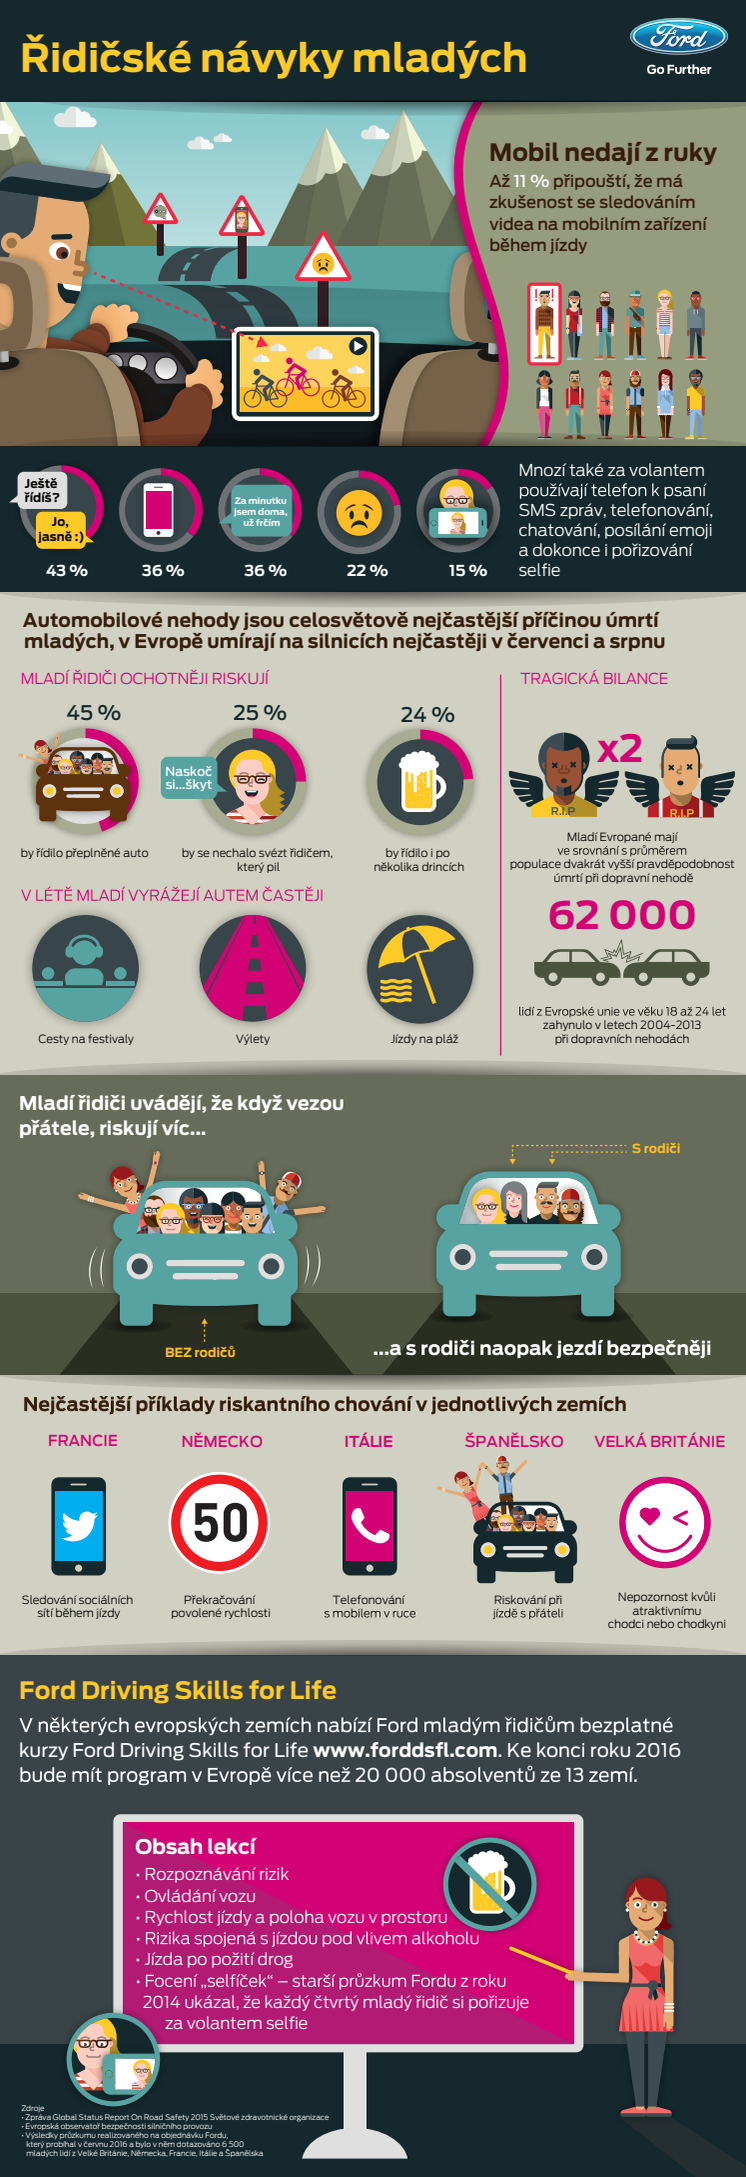 Nejvíc mladých lidí ve věku 18 až 24 let umírá na silnicích v létě; rizikovými faktory jsou pro ně nepozornost i alkohol